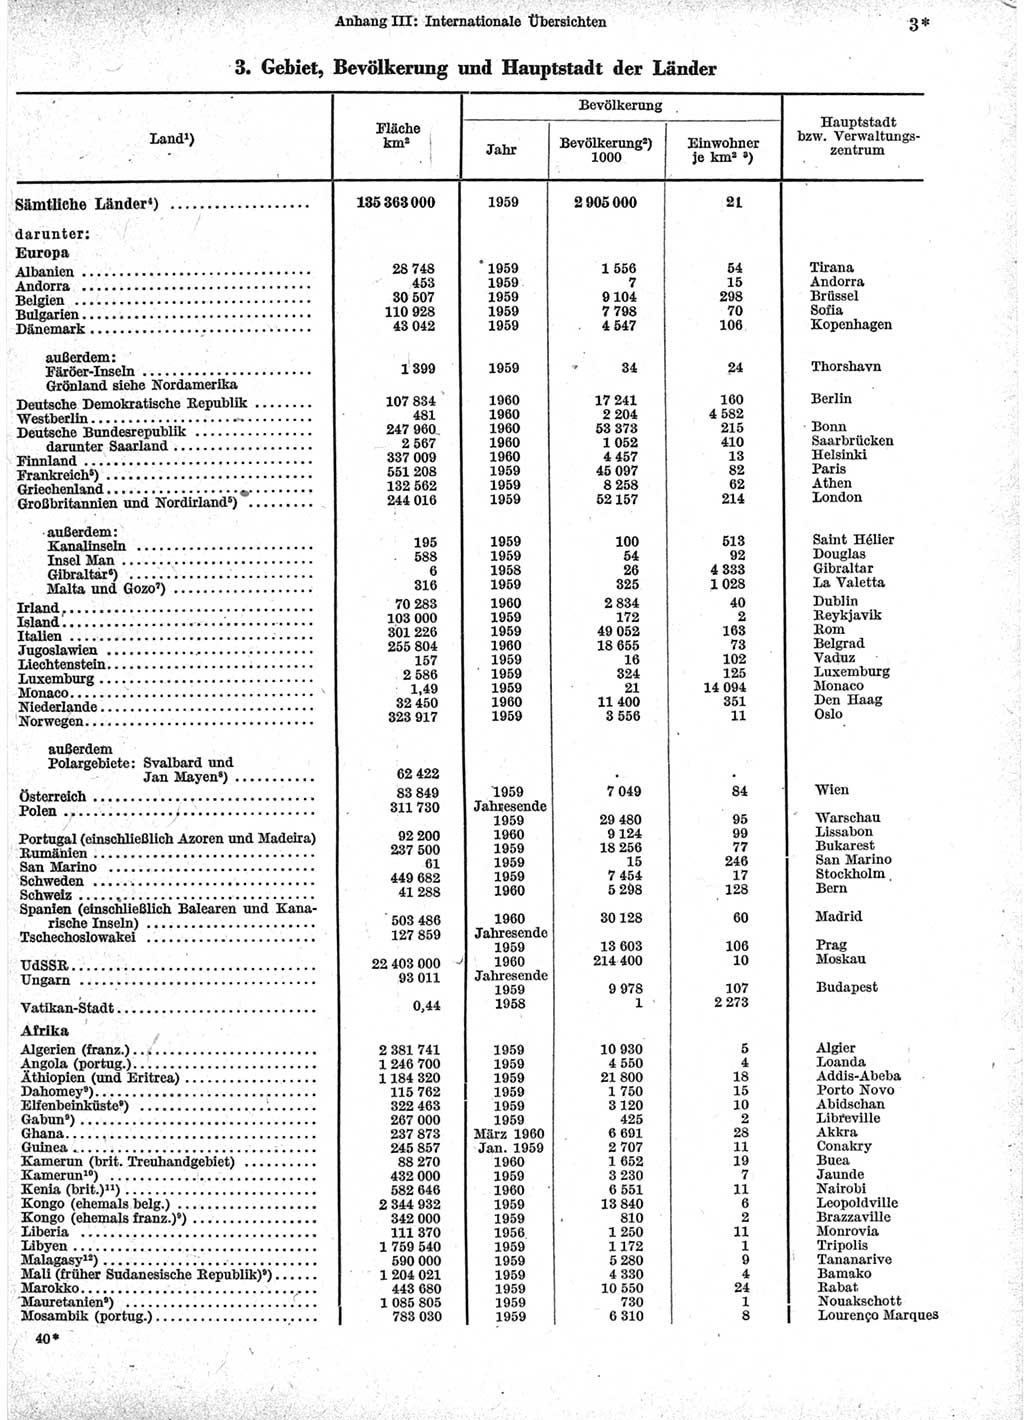 Statistisches Jahrbuch der Deutschen Demokratischen Republik (DDR) 1960-1961, Seite 3 (Stat. Jb. DDR 1960-1961, S. 3)